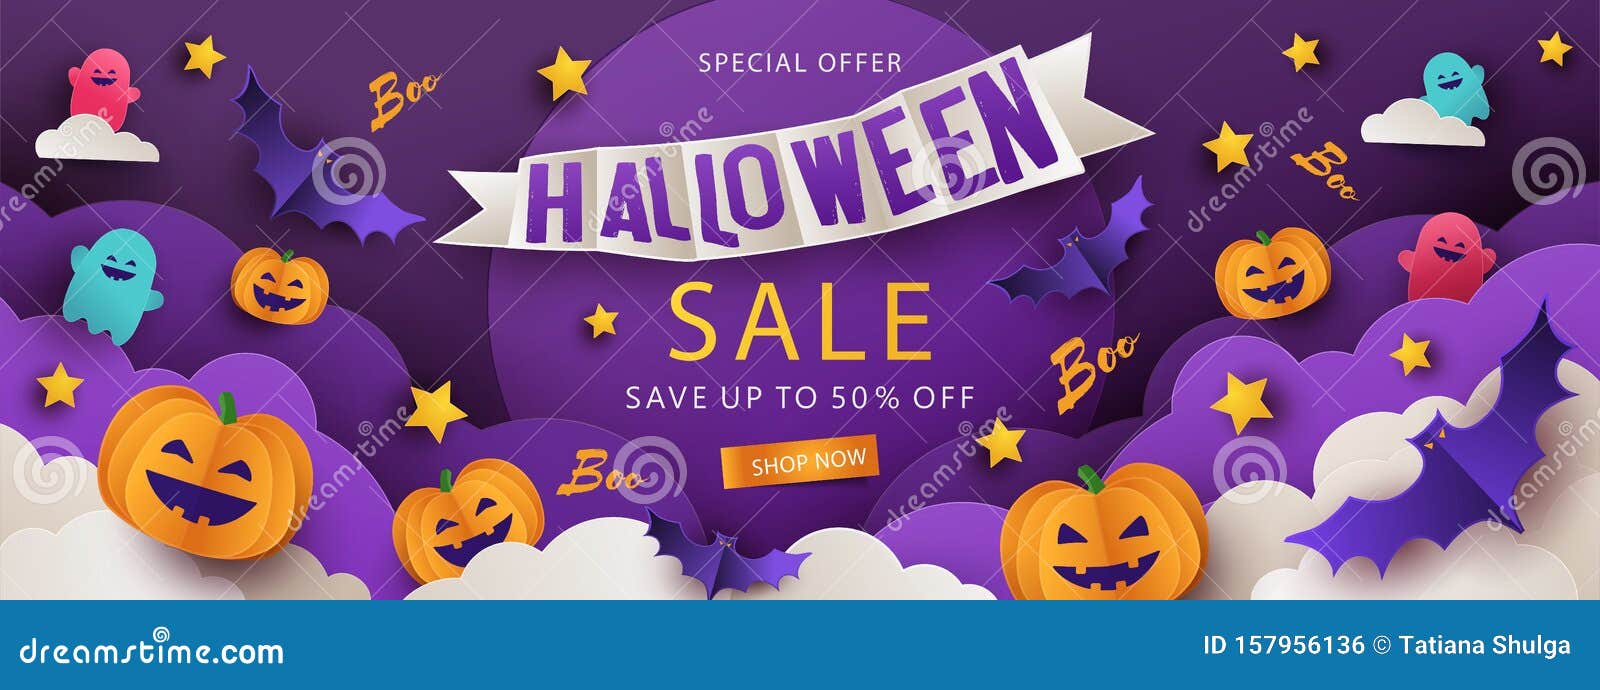 50 modelos de PowerPoint de Halloween para tocar na temporada assustadora